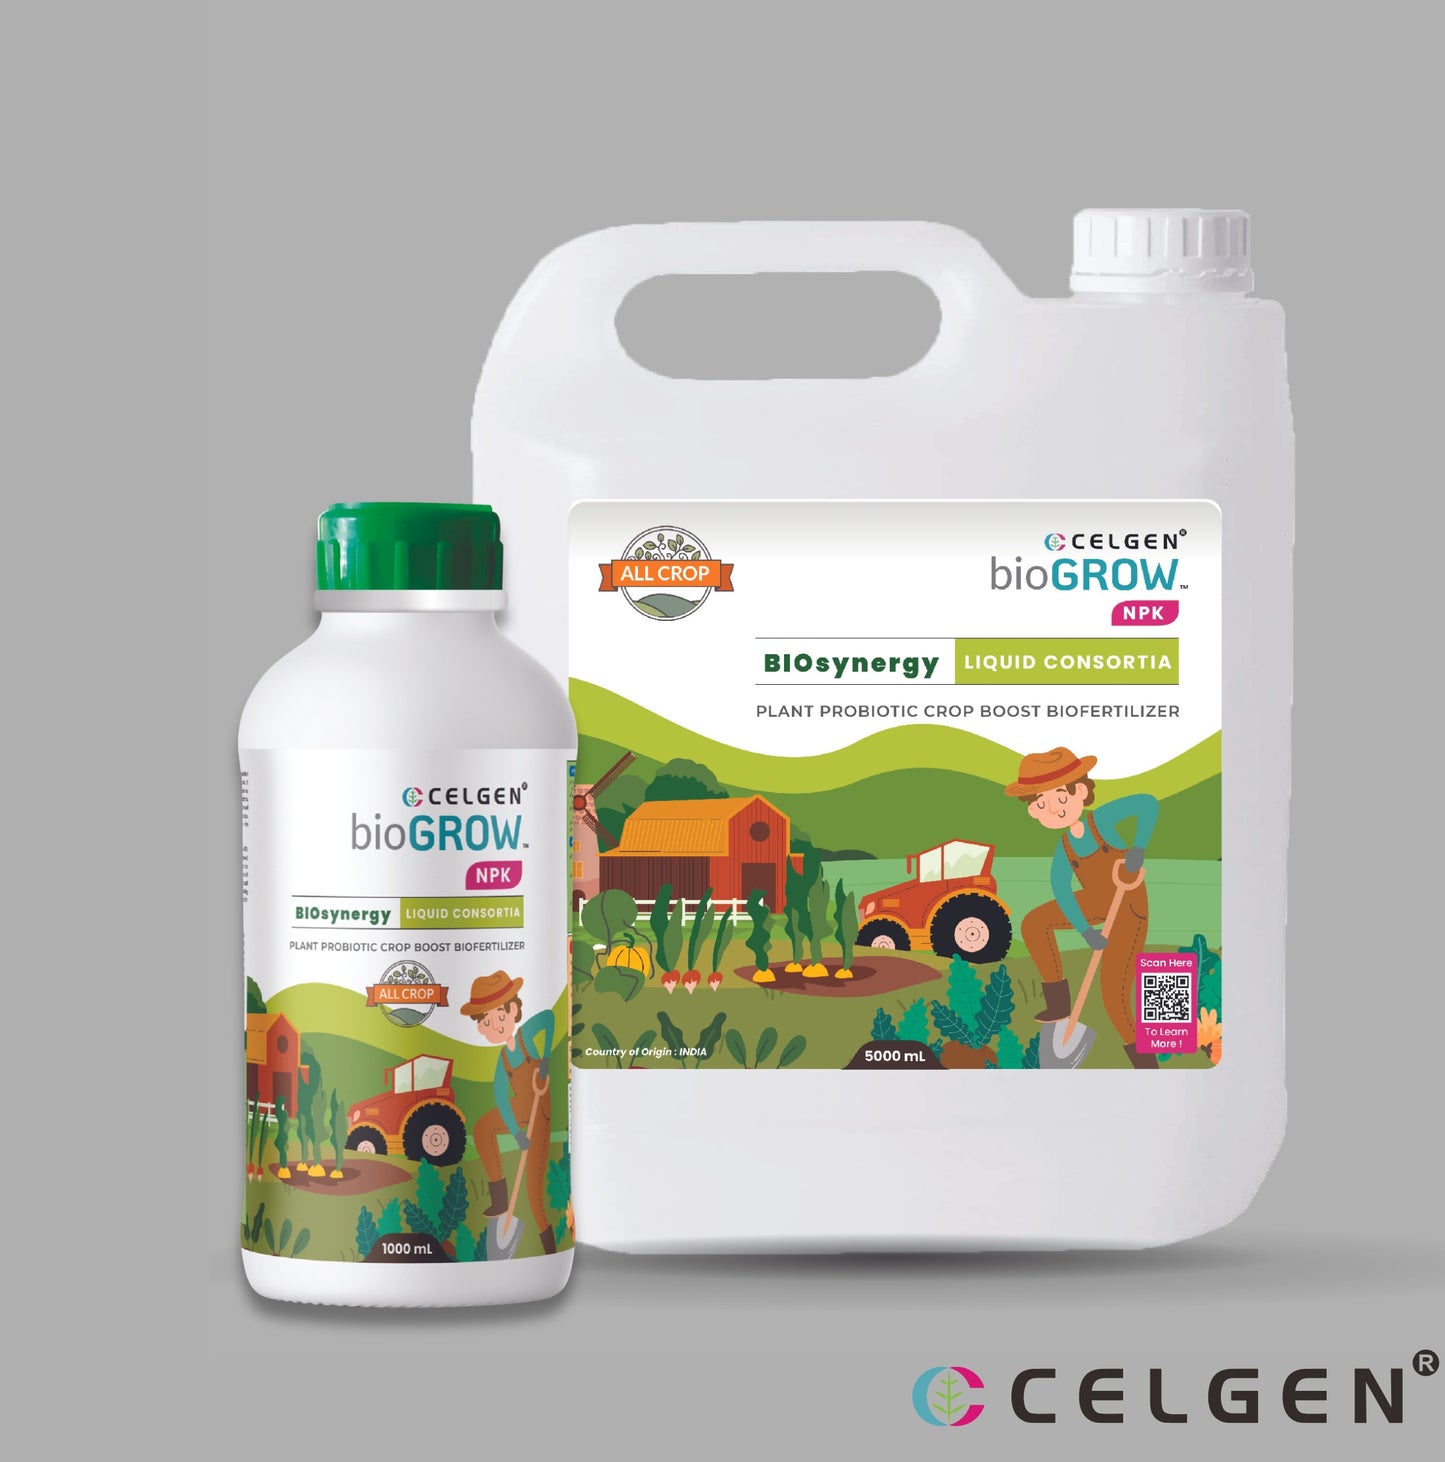 Celgen-bioGROW NPK Liquid Plant Nutrient Booster